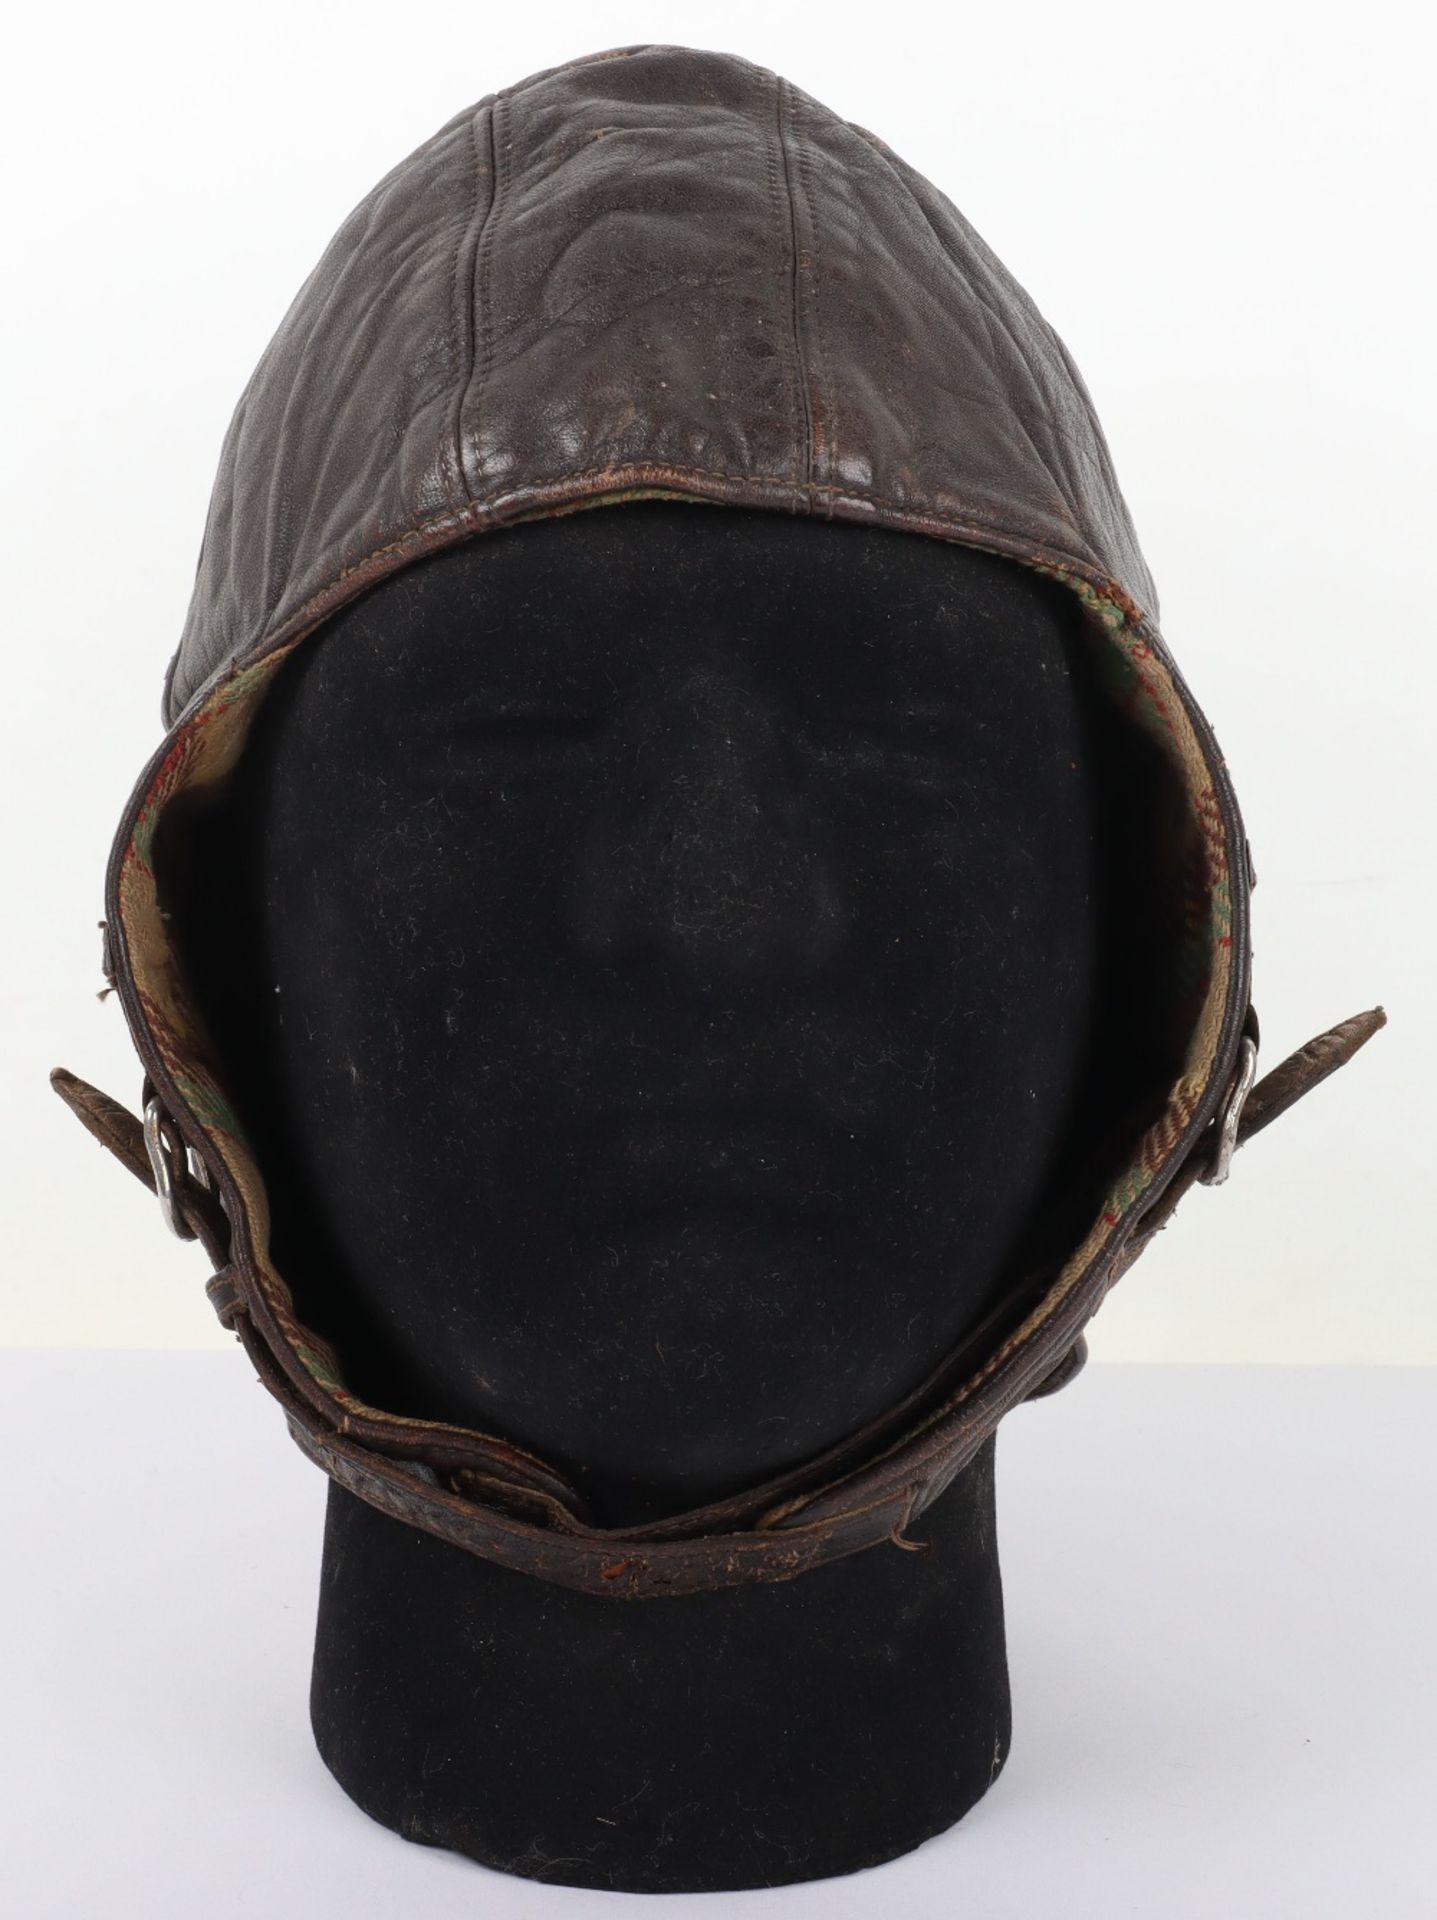 1930’s German Leather Flying Helmet - Image 8 of 8